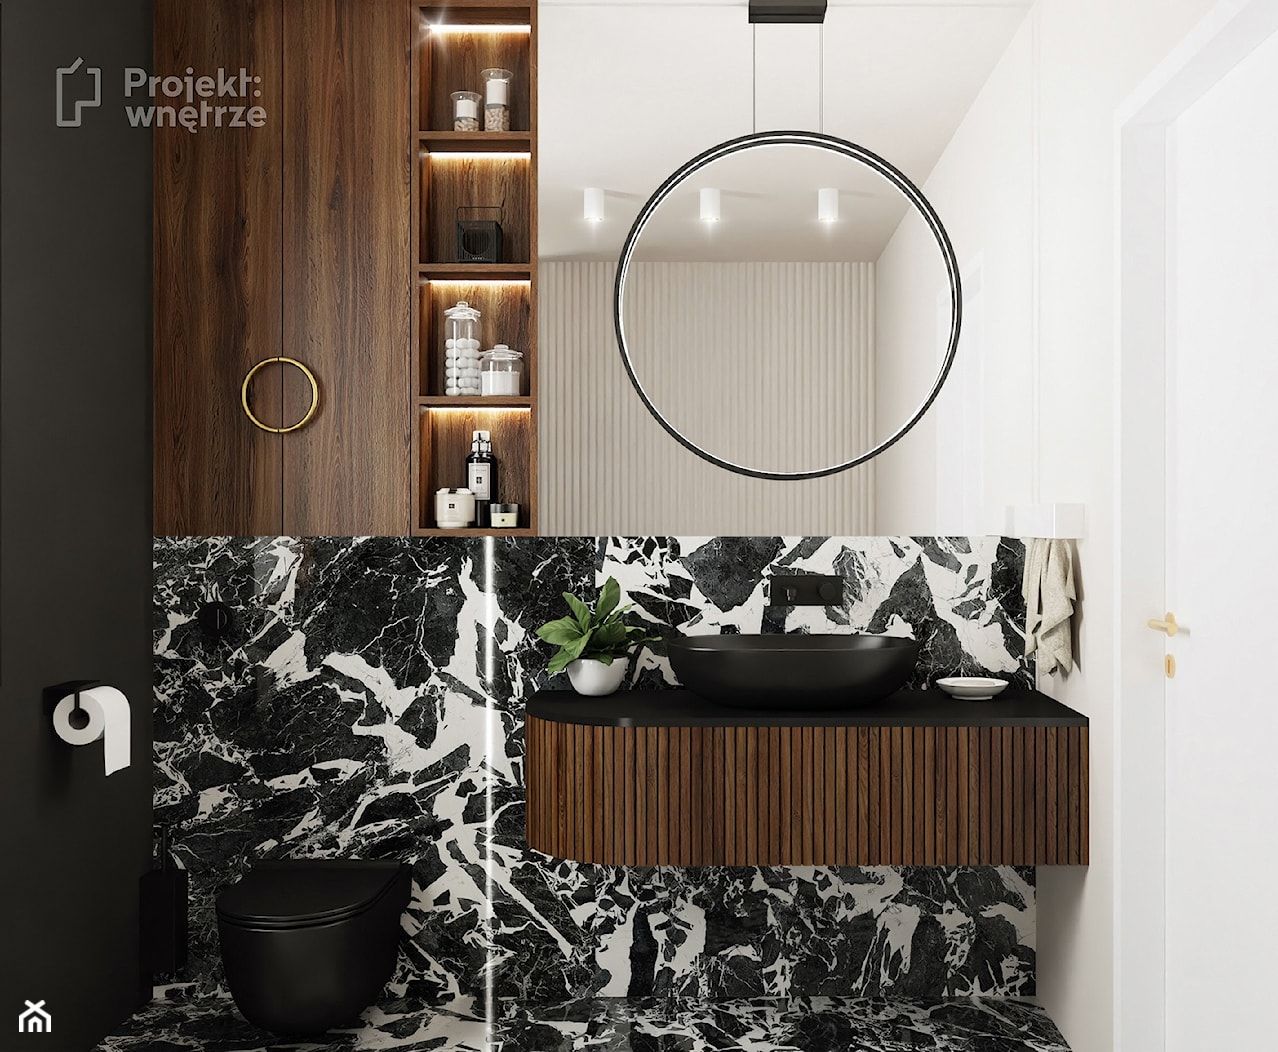 Mała łazienka z wanną z oknem styl nowoczesny minimalistyczny z WC beżowa czarna umywalka lamele okrągłe lustro oświetlenie punktowe ledowe czarna armatura - zdjęcie od PROJEKT: WNĘTRZE - Homebook